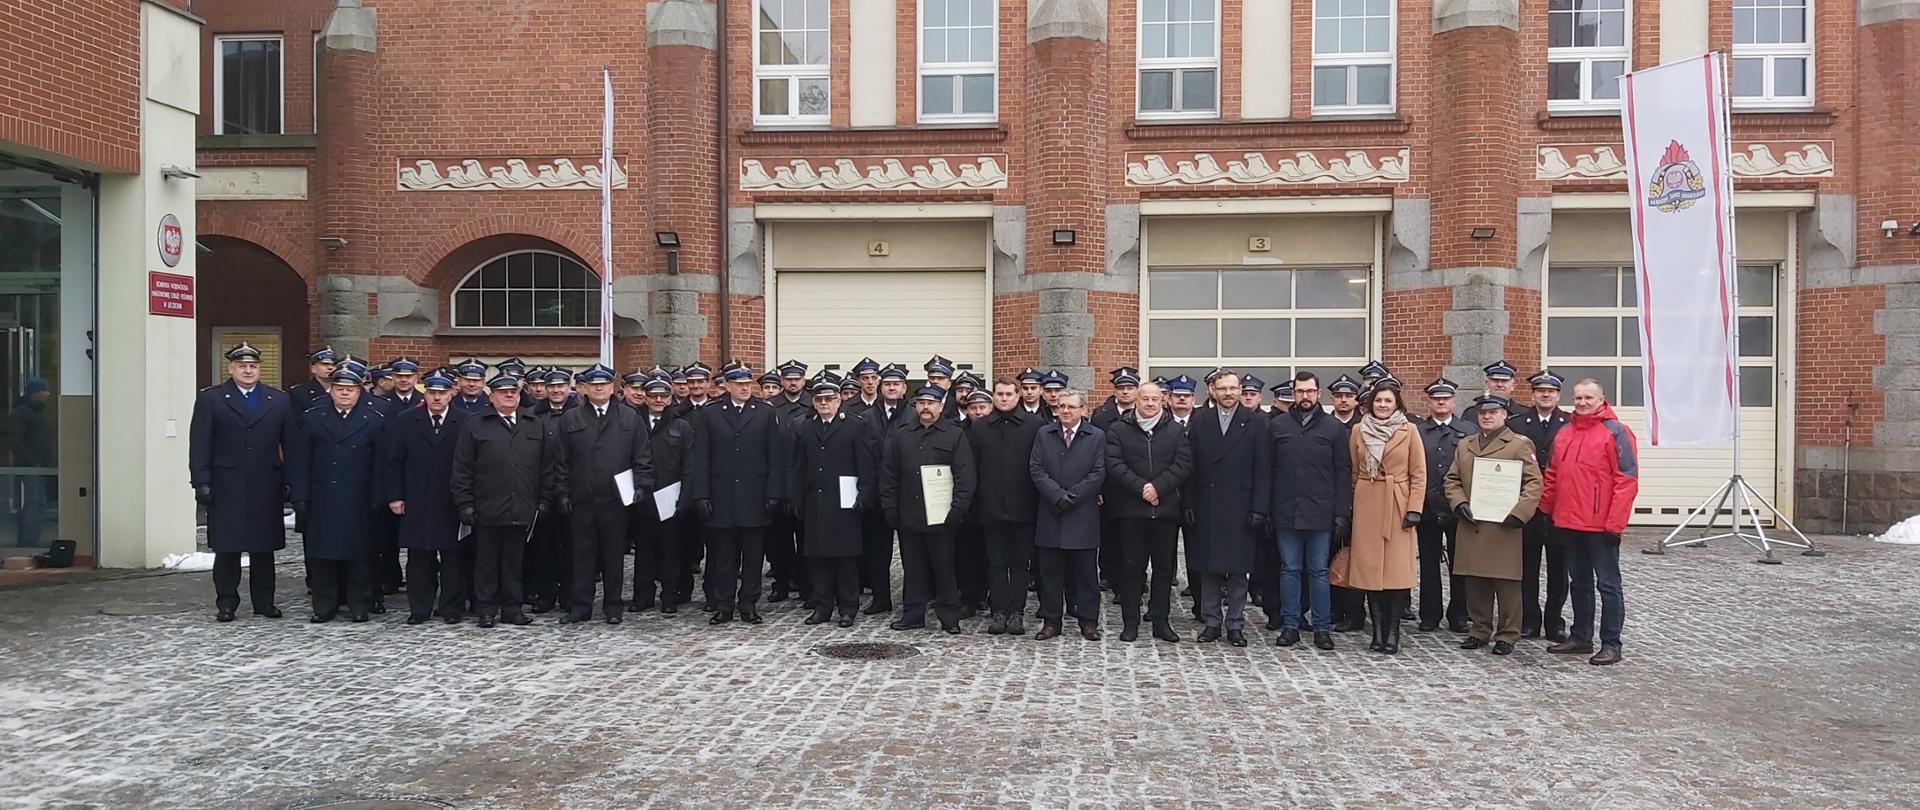 na zdjęciu widać przedstawicieli Ochotniczych Straży Pożarnych, Wojskowej Straży Pożarnej, Komendantów Miejskich i Powiatowych Państwowej Straży Pożarnej oraz zaproszonych gości pozujących do wspólnego zdjęcia przed budynkiem Komendy Wojewódzkiej PSP w Szczecinie.